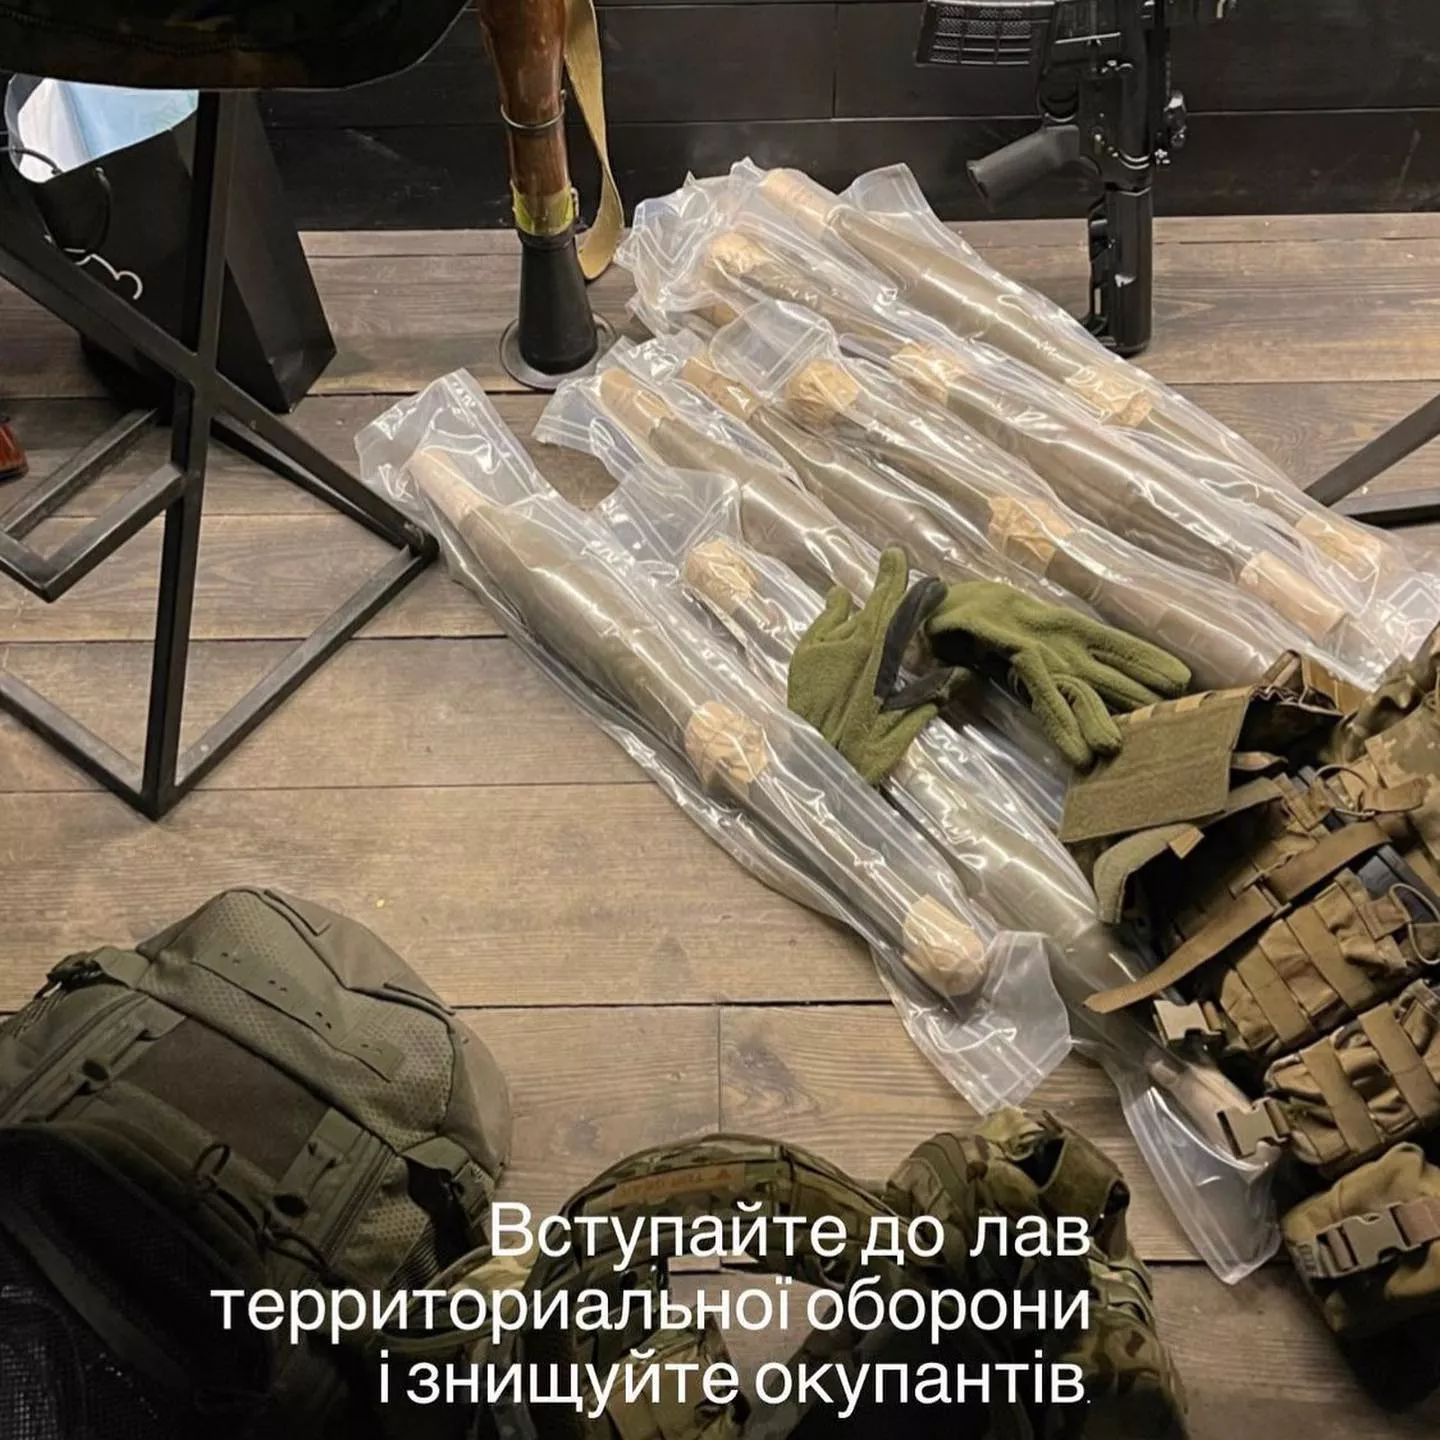 Певец и фронтмен группы "Бумбокс" Андрей Хливнюк присоединяются к рядам территориальной обороны.